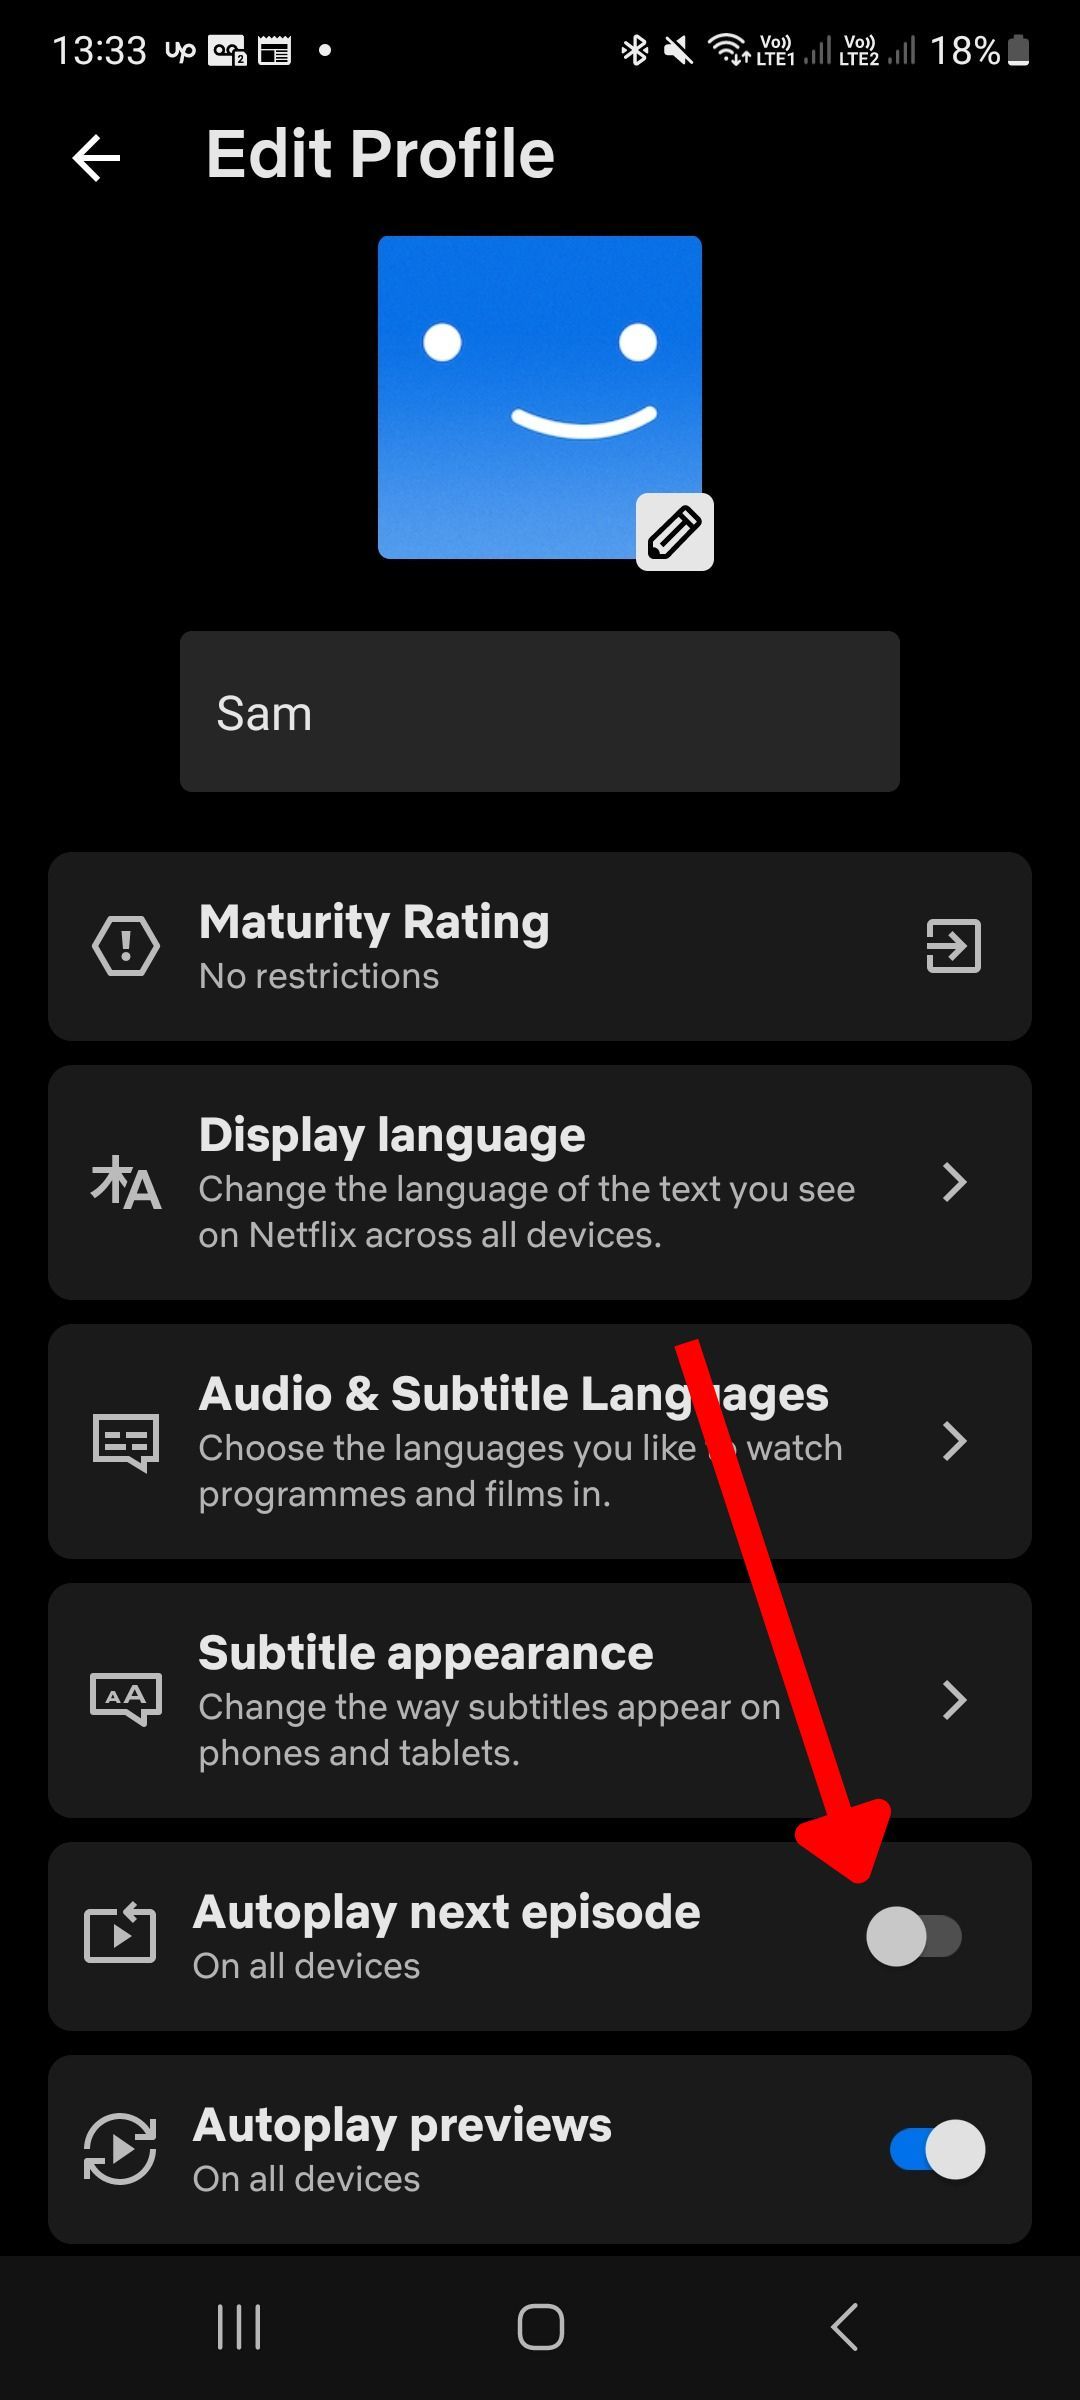 Captura de tela do aplicativo móvel Netflix com uma seta apontando para a opção de reprodução automática do próximo episódio